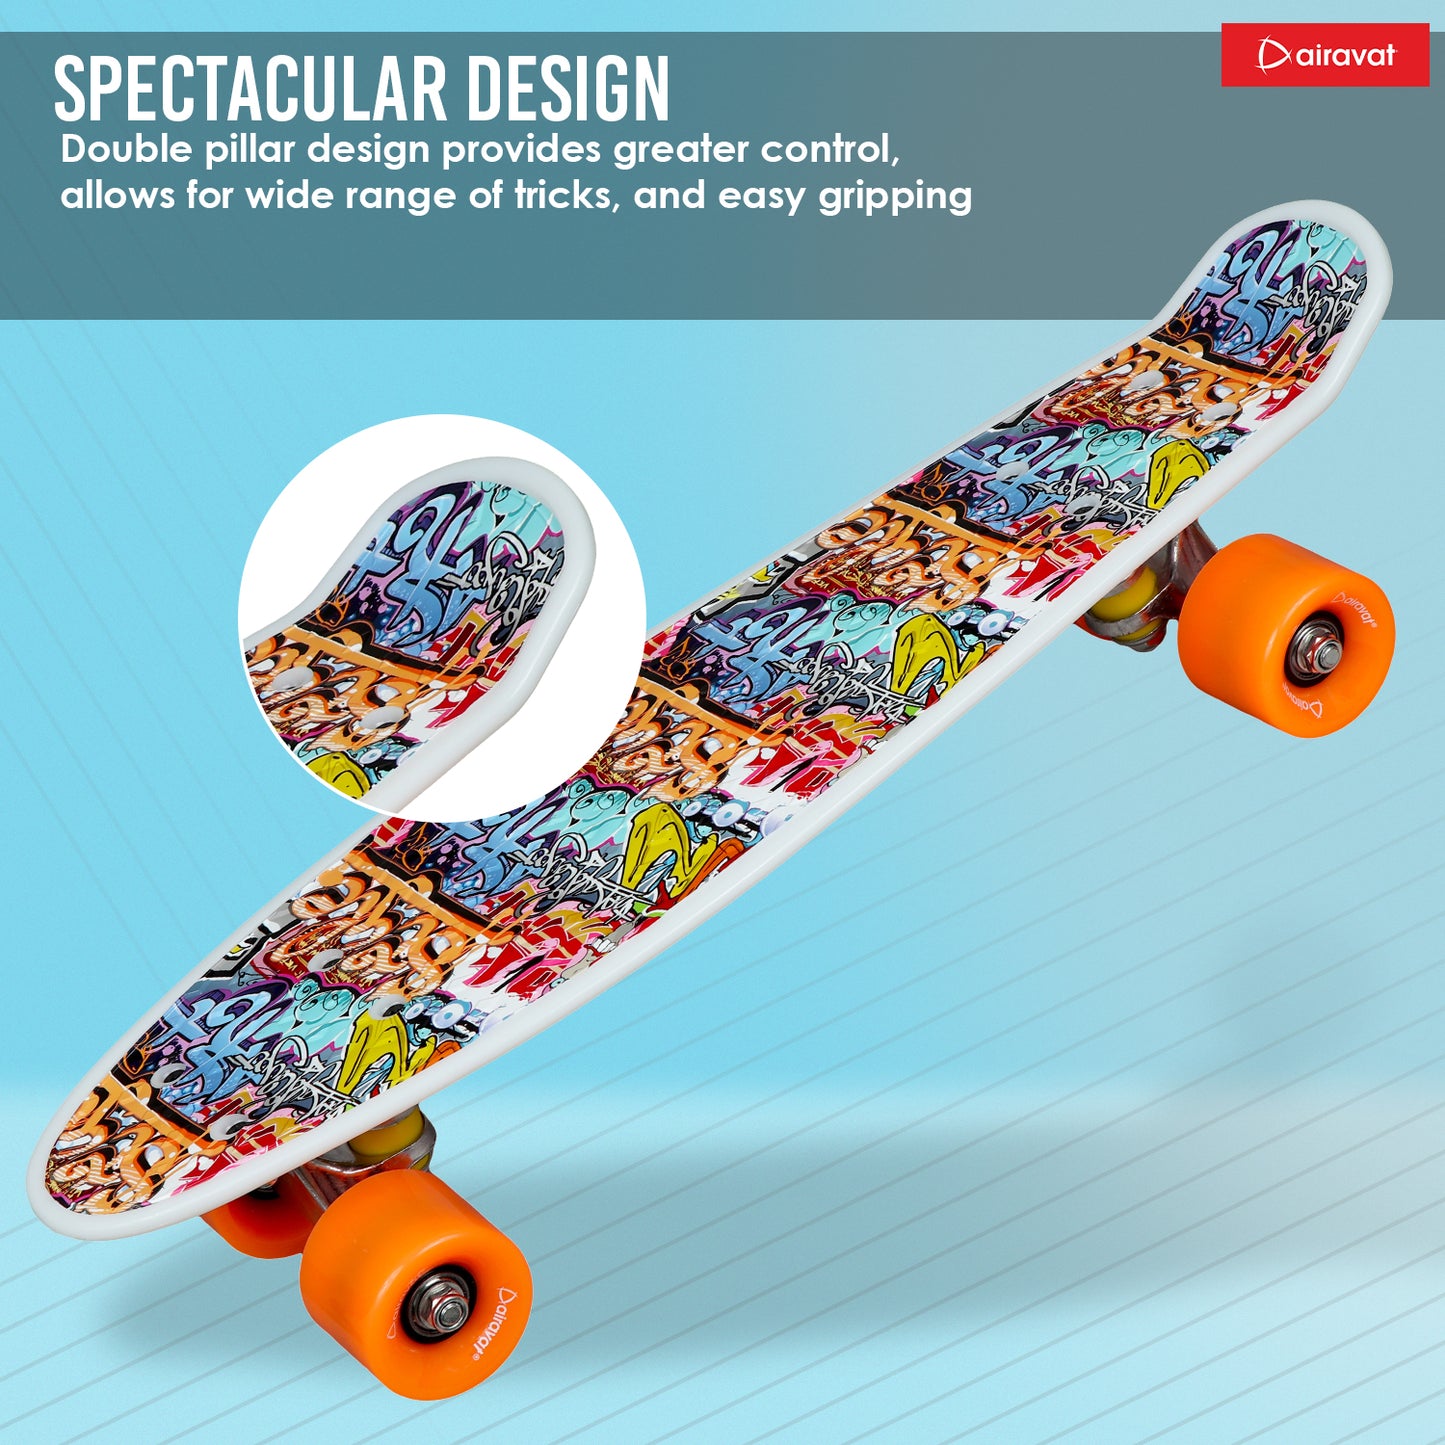 7811-skateboard-style-5-spectacular-design